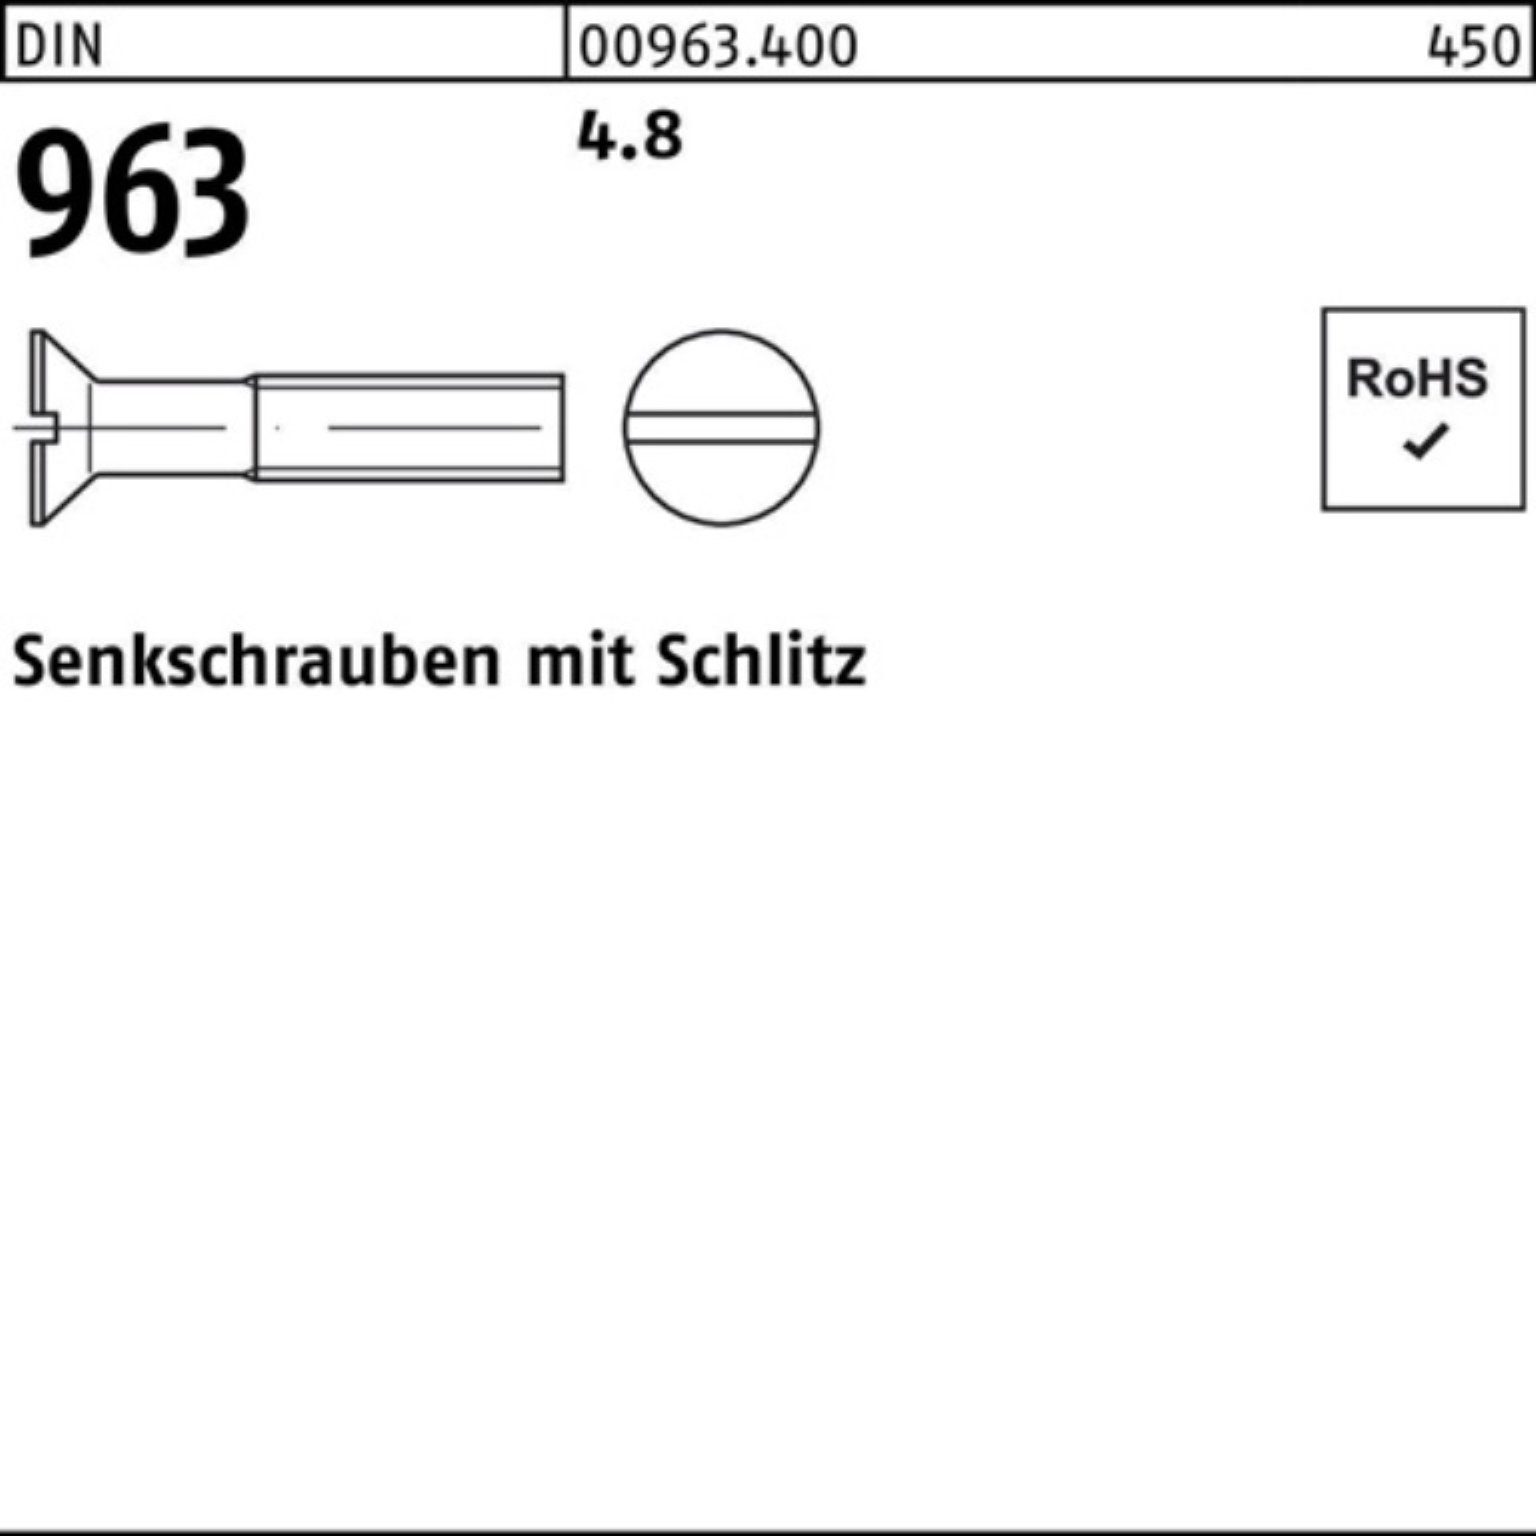 Senkschraube 2000 16 DIN 4.8 M2x Reyher Stück Senkschraube 2000er Schlitz 963 DIN Pack 96